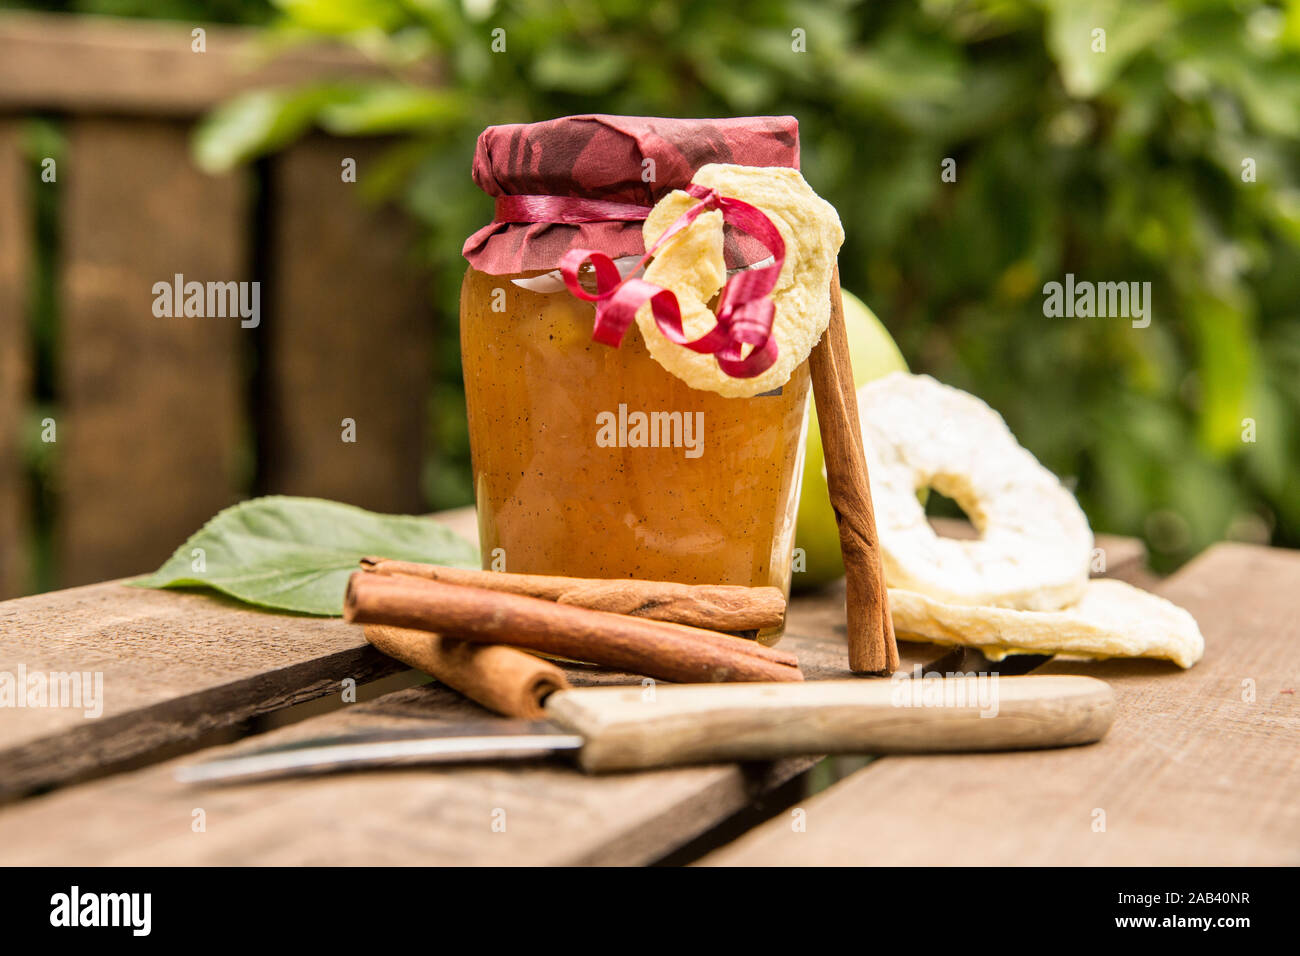 Ein Glas mit Apfelkonfitüre mit Zimtstangen auf einer Obstkiste |A glass of apple jam with cinnamon sticks on a fruit crate| Stock Photo